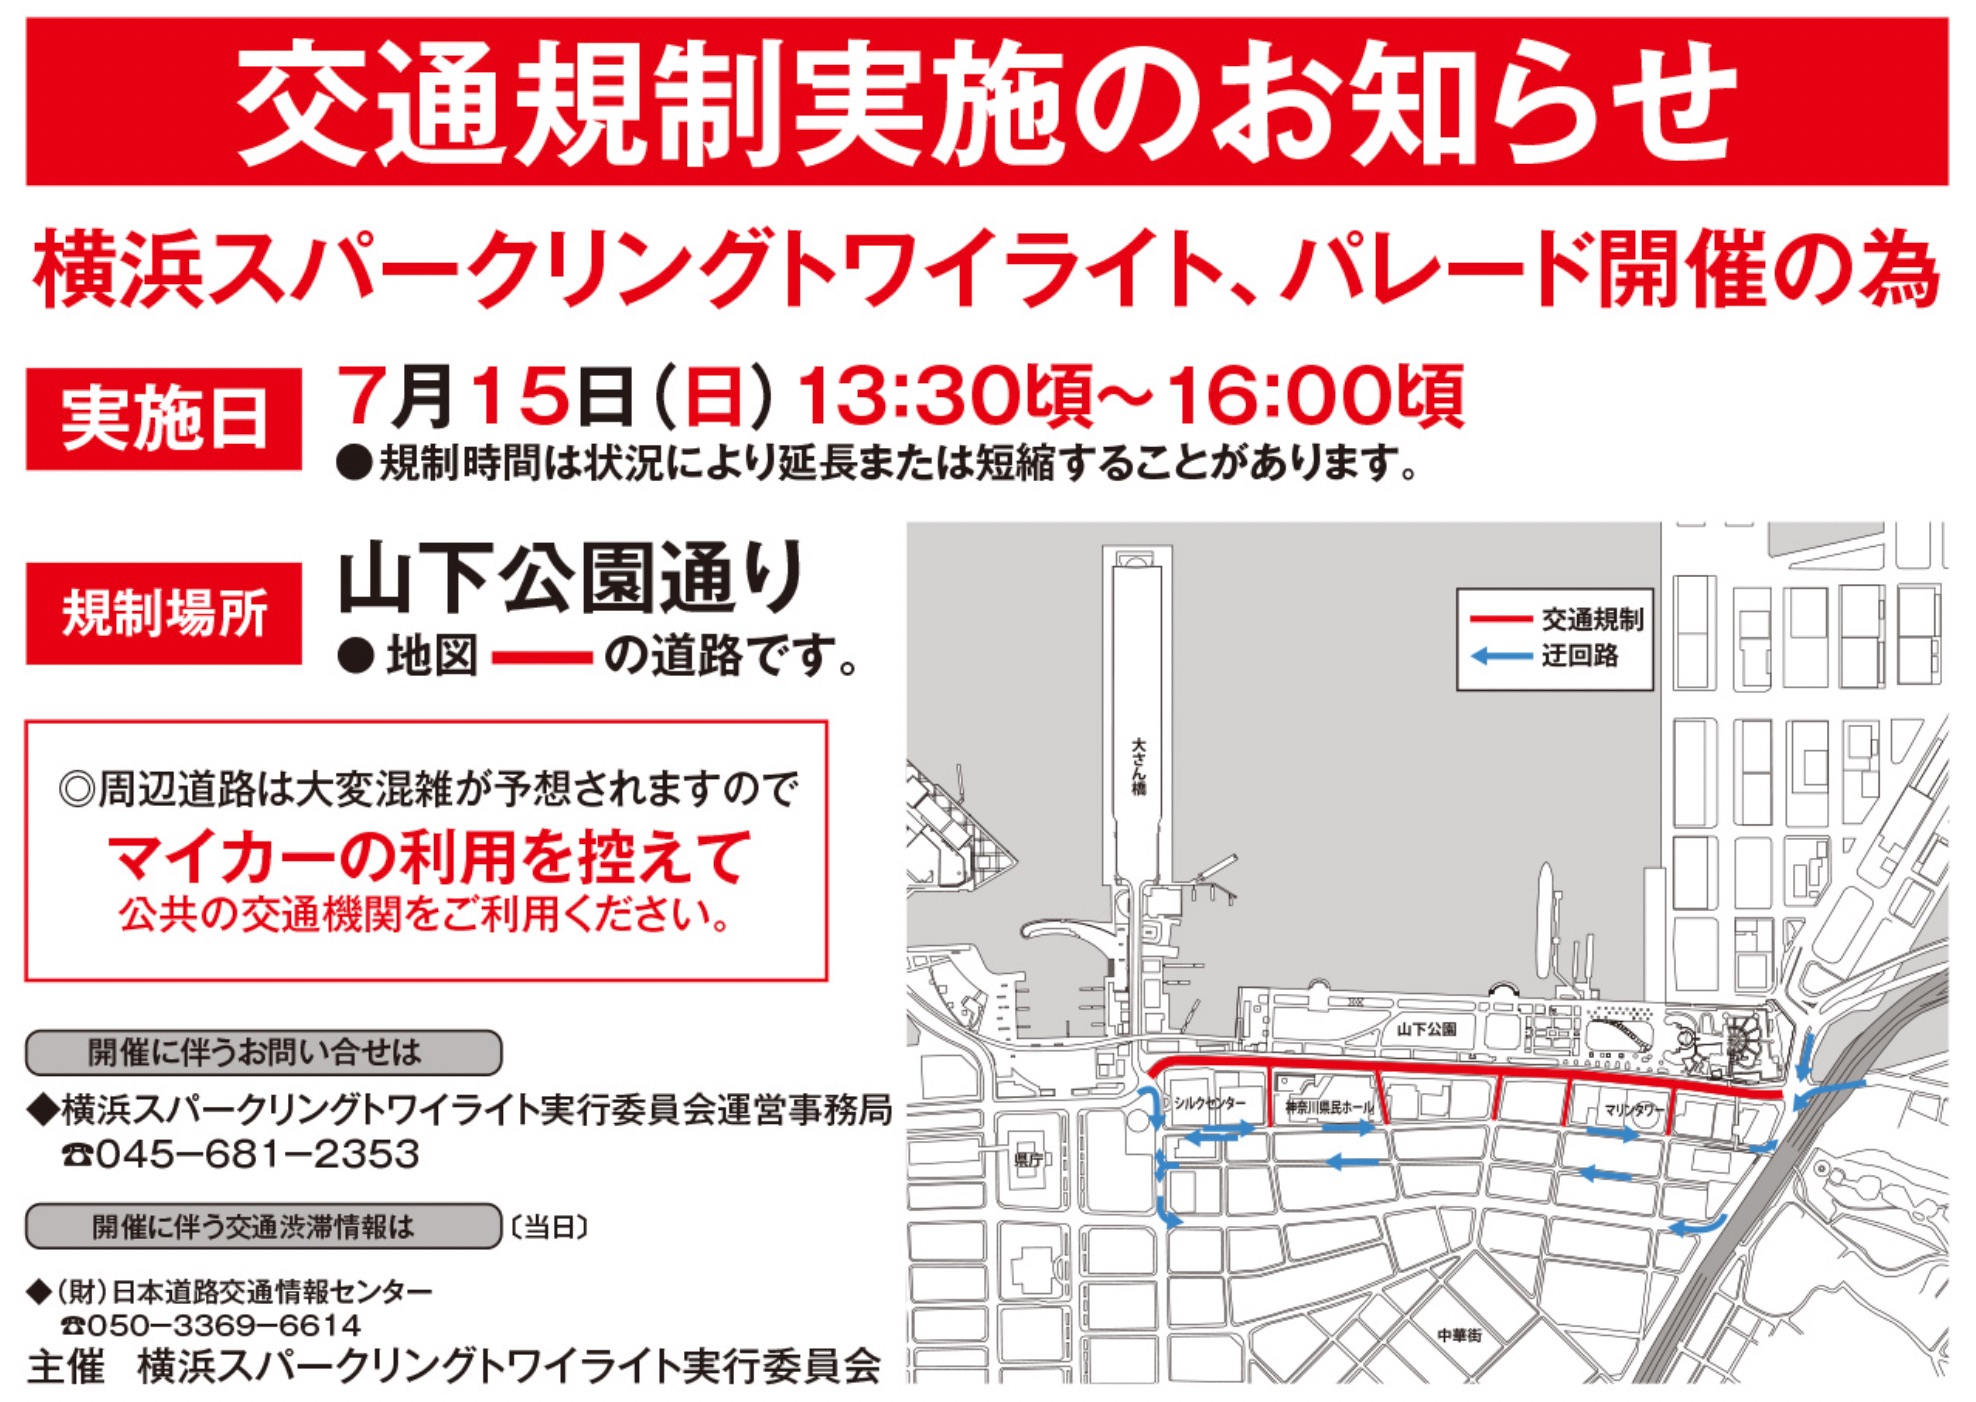 横浜スパークリングトワイライト22混雑 渋滞情報 穴場な駐車場や屋台もチェック 混雑してる